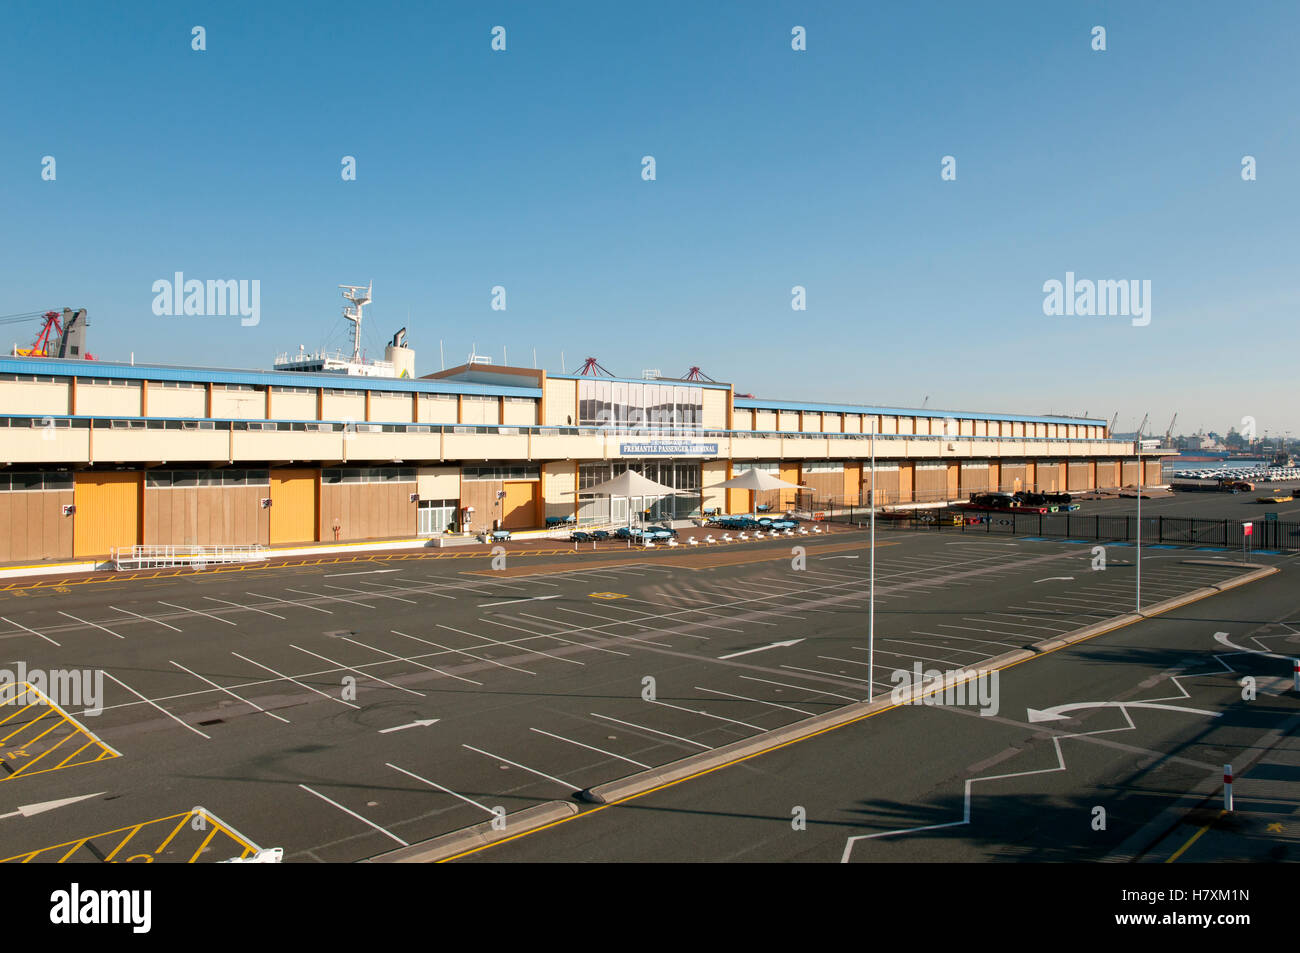 Passagier-Terminal von Fremantle Port - Australien Stockfoto